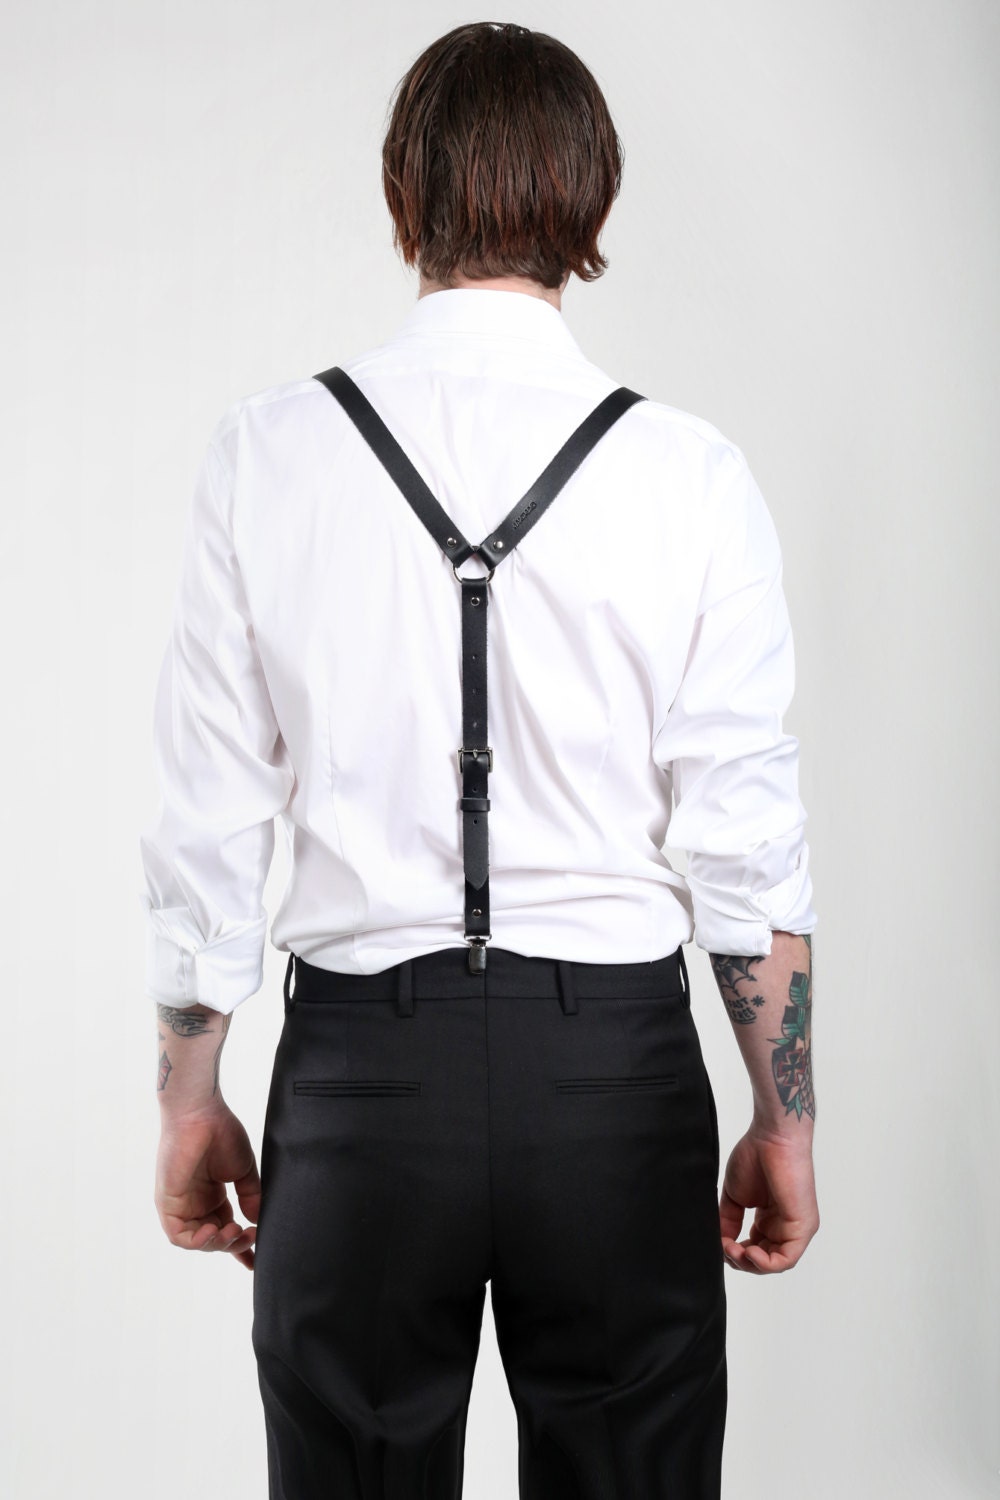 JAKIMAC Men's Matte Leather Suspenders / Premium Genuine